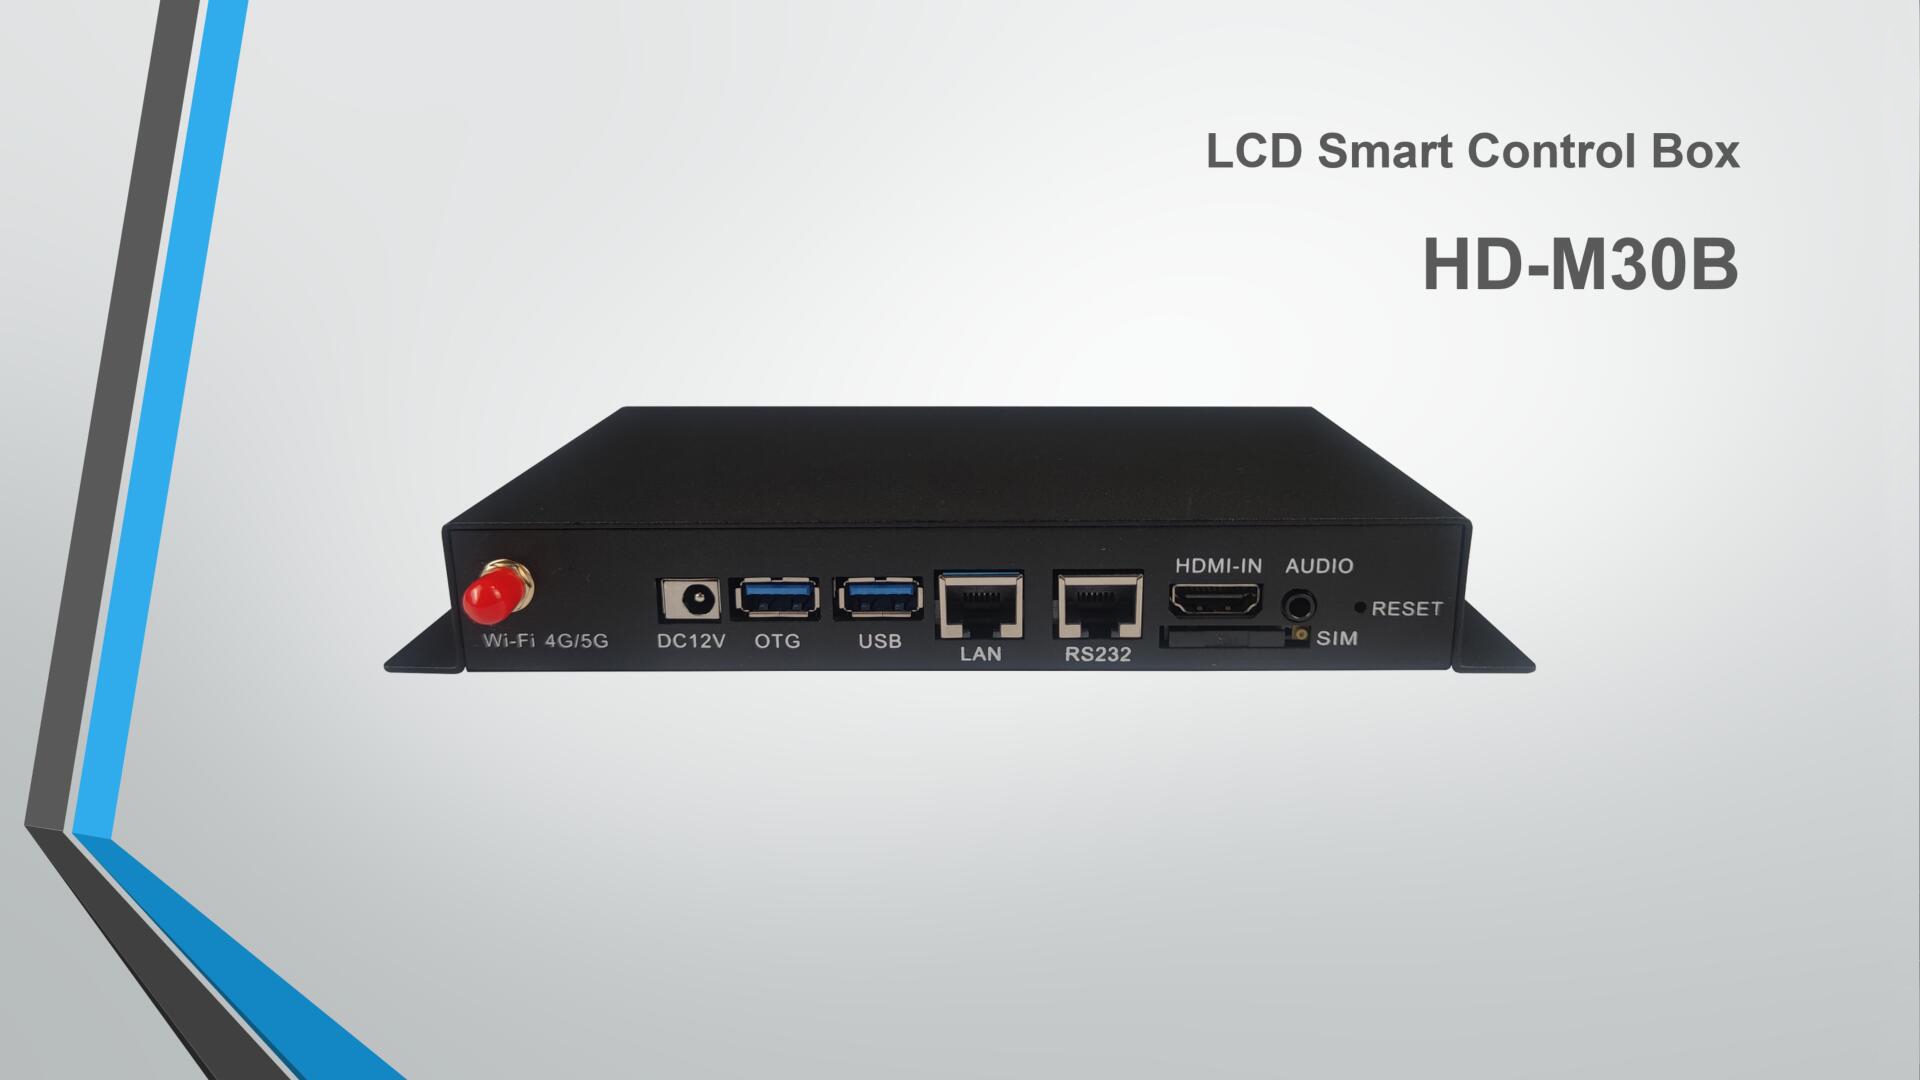 Fabricantes de soluções de sistema de controle de display LED profissional | Prático cartão de controle LCD HD-M30B | Fornecedor Huidu